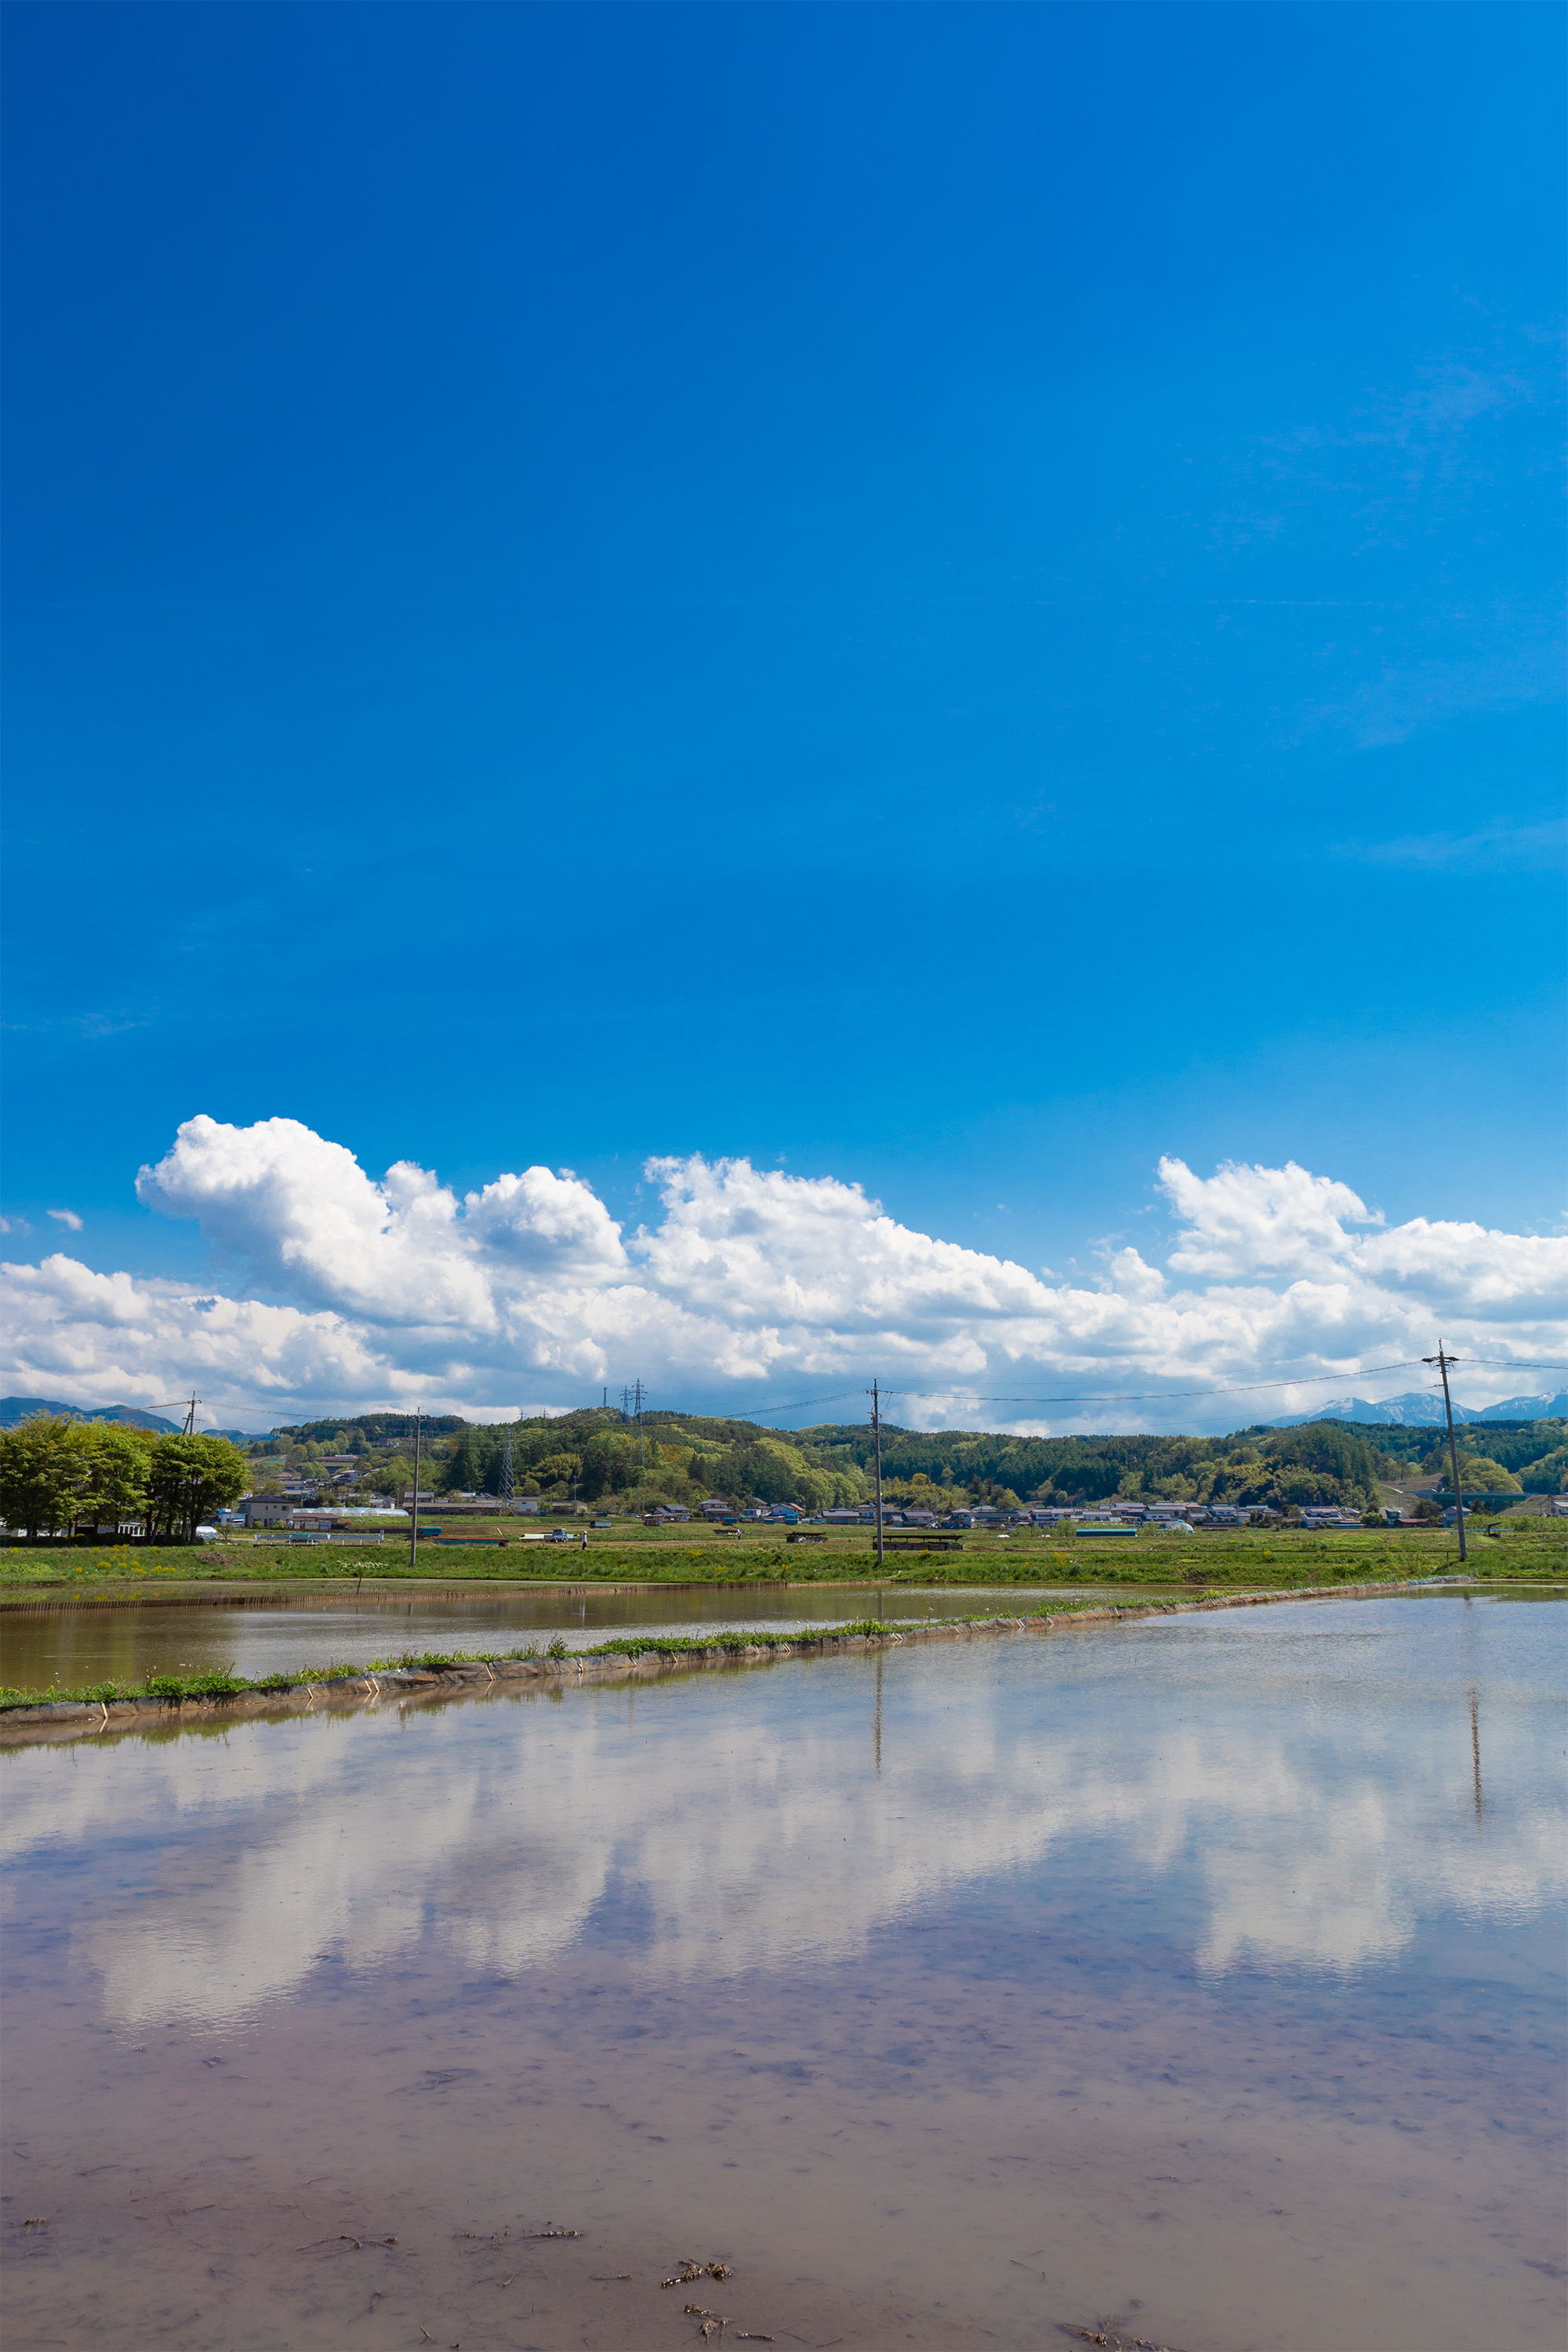 田植え前の水田と空の風景03 無料の高画質フリー写真素材 イメージズラボ